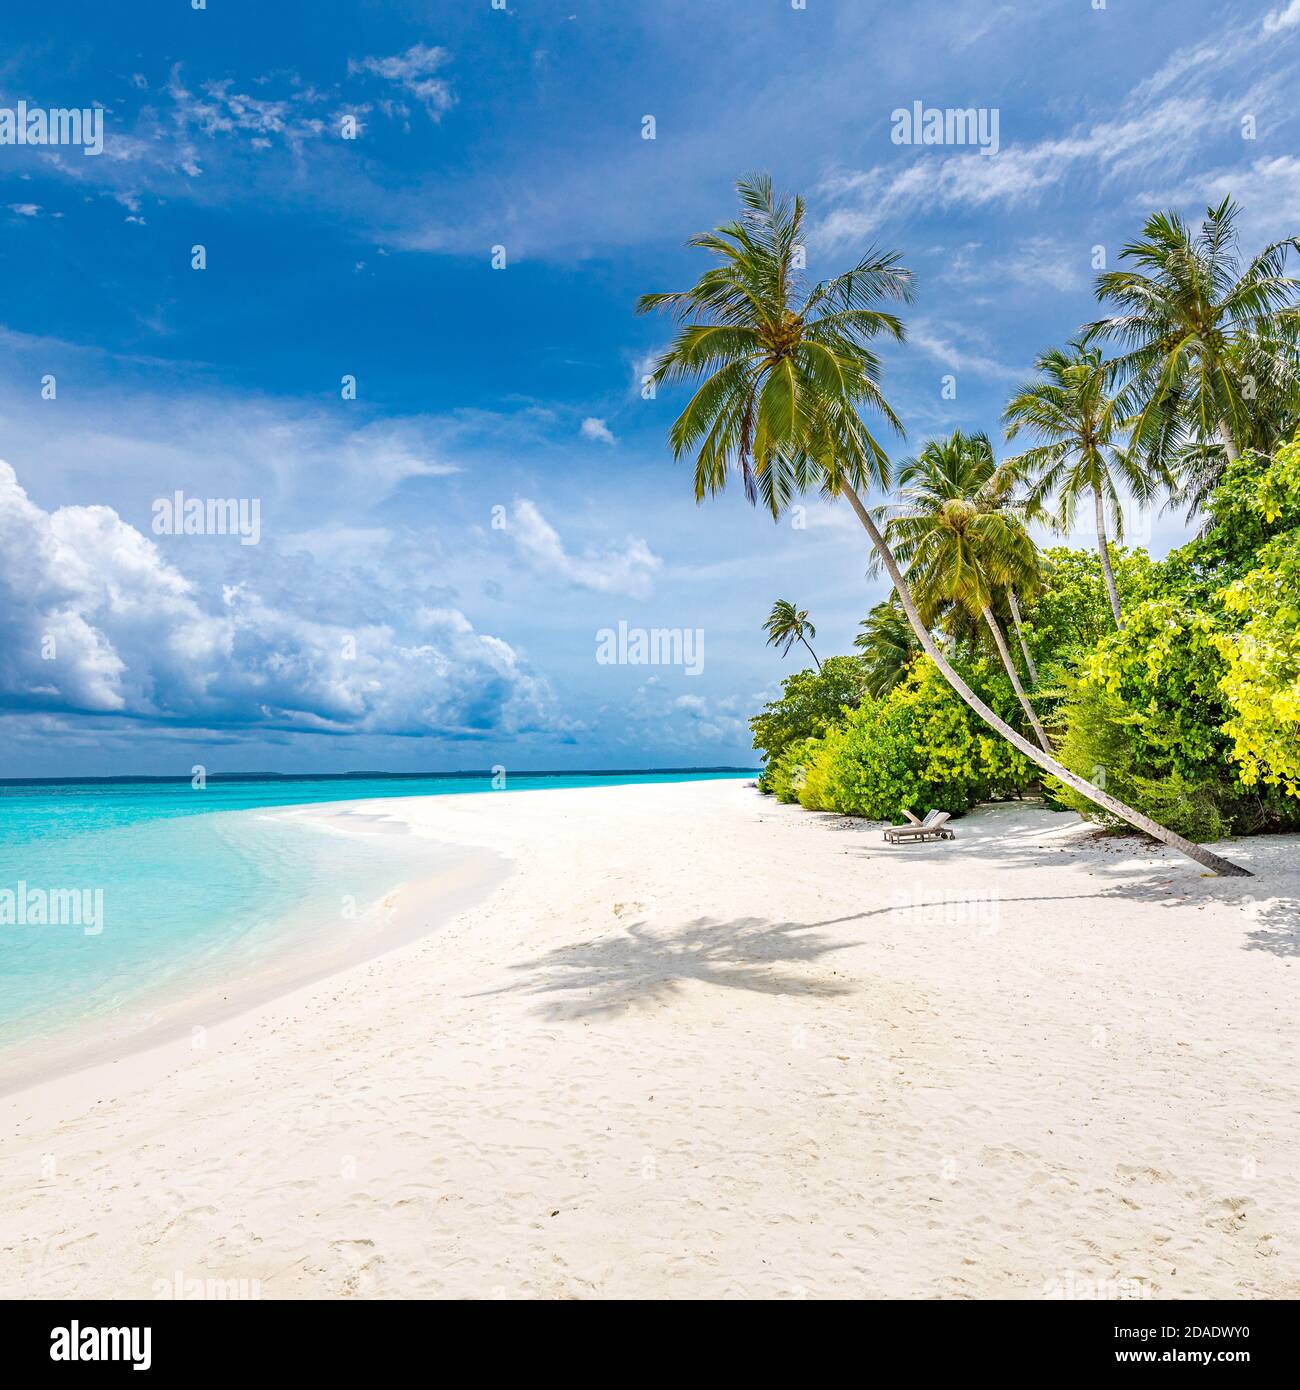 Maldivas paraíso tropical playa. Vistas increíbles, agua azul turquesa de la laguna, palmeras y playa de arena blanca. Destino de vacaciones de viaje de lujo Foto de stock